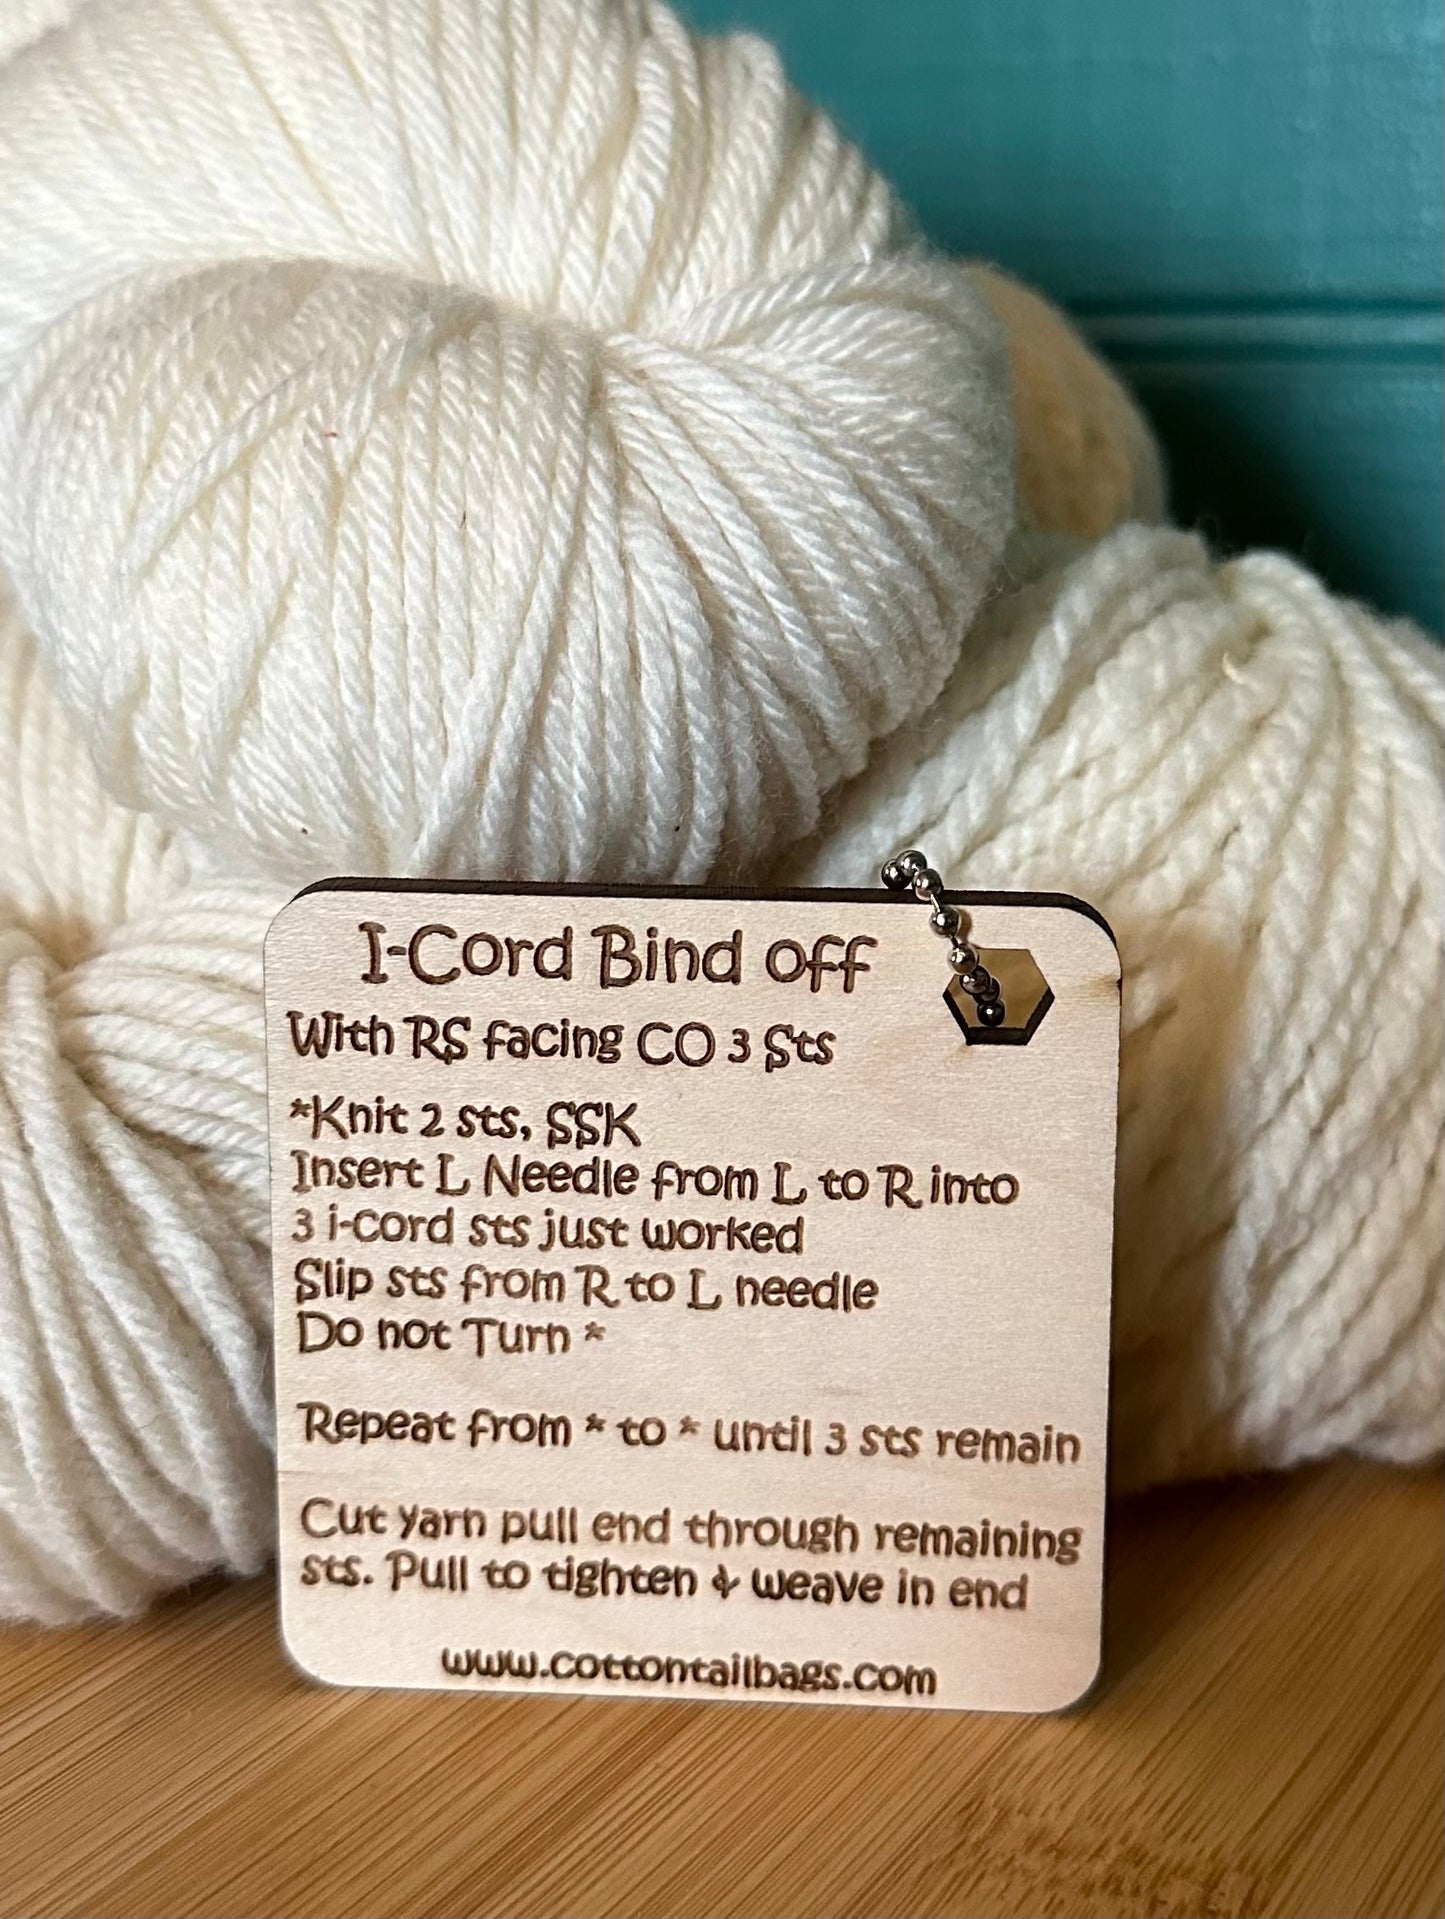 I-cord Bind Off